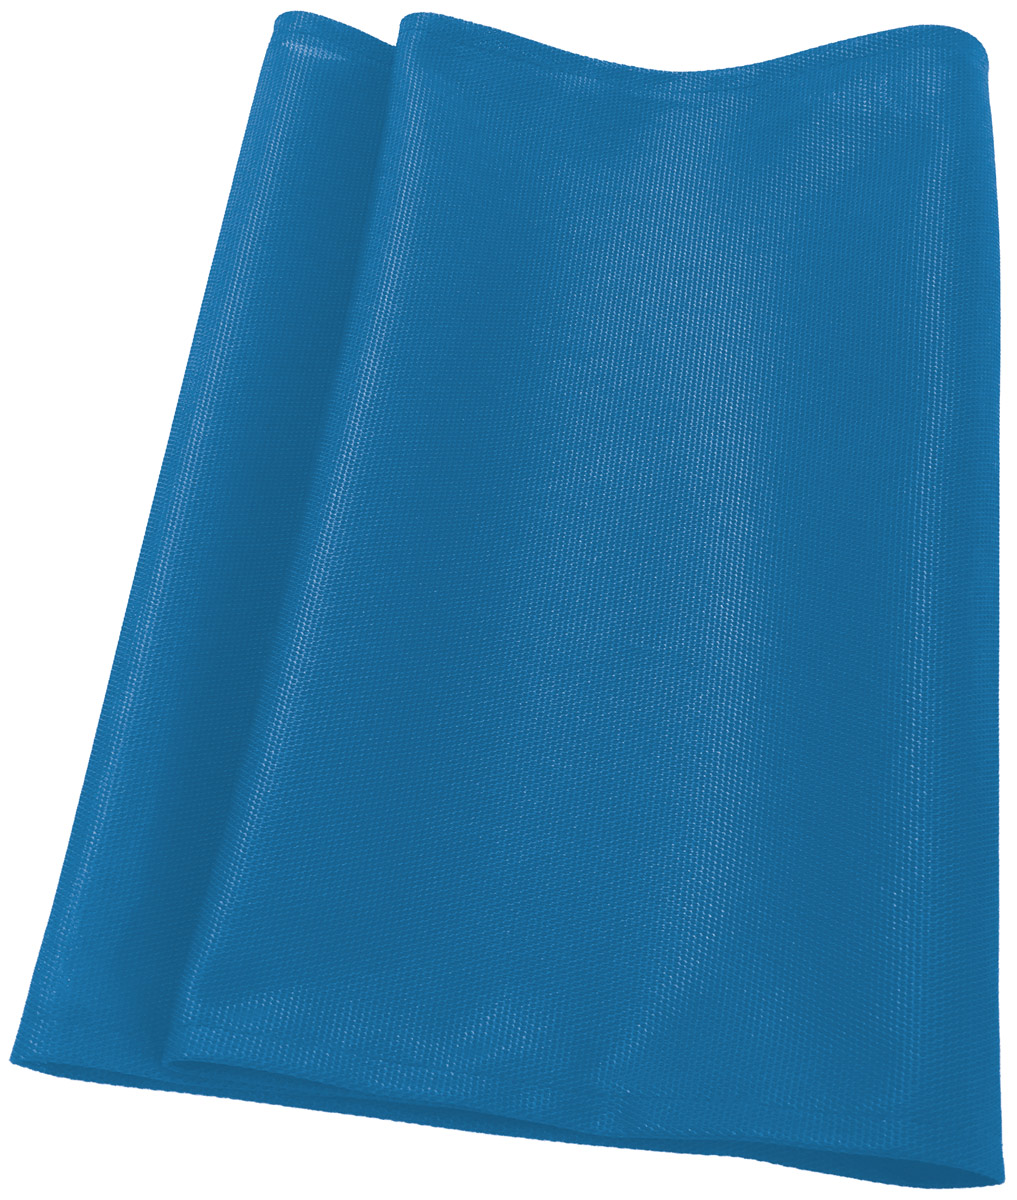 IDEAL Textil Filter für Luftreiniger AP30/AP40 PRO blau